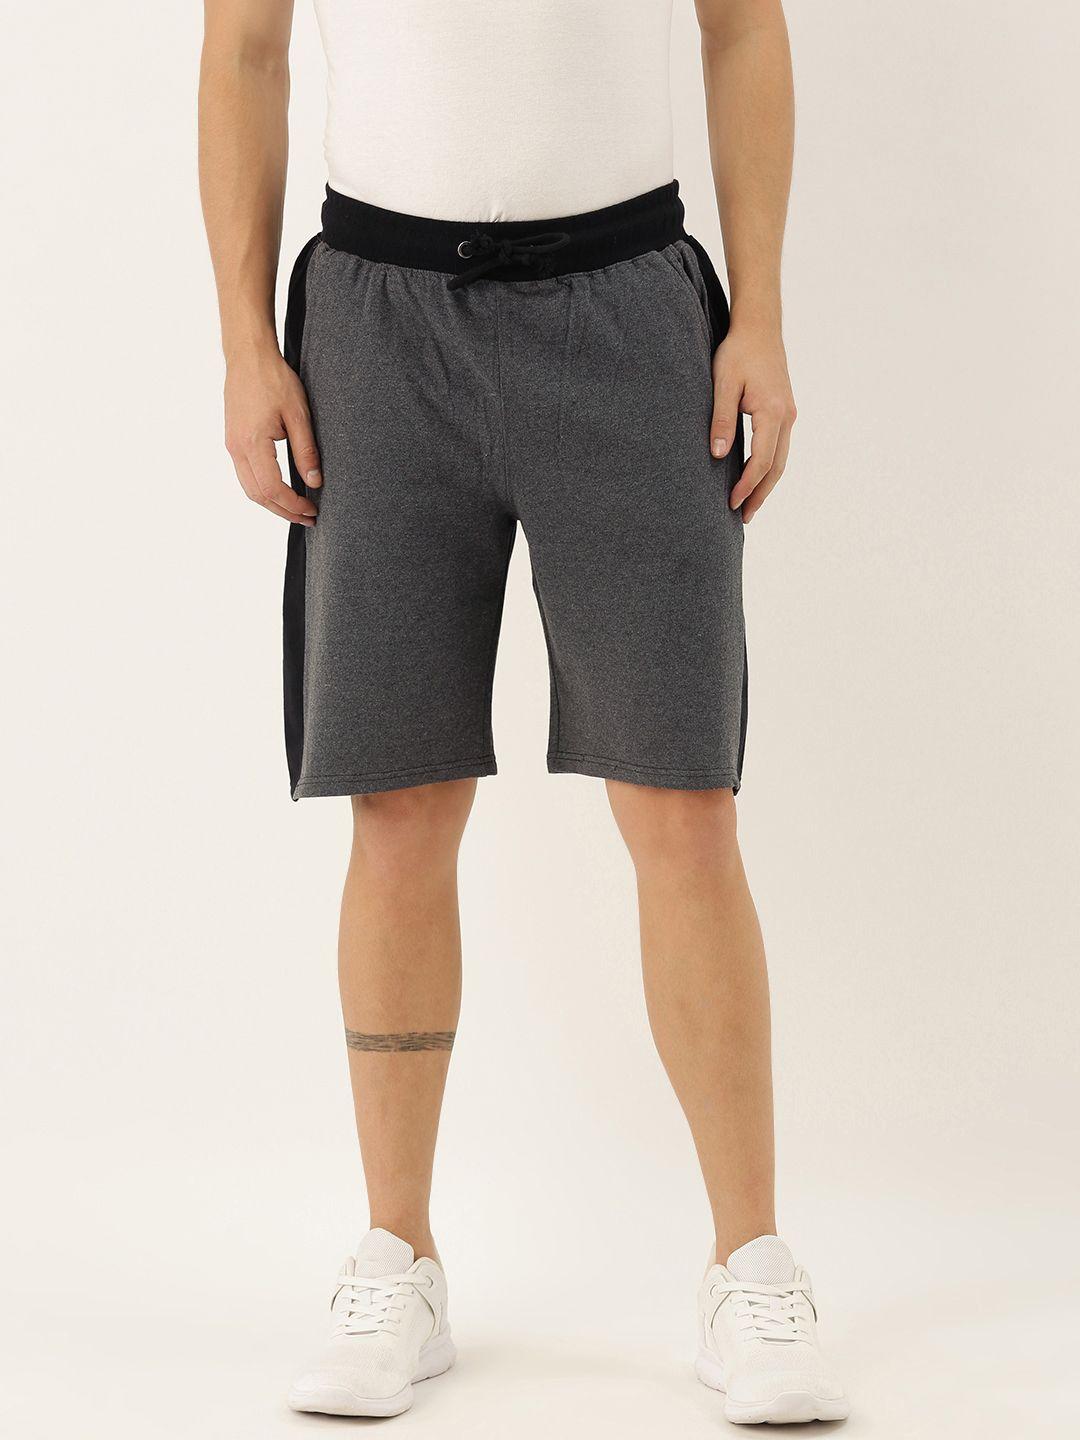 arise-men-grey-melange-solid-regular-fit-regular-shorts-with-side-block-panel-detailing